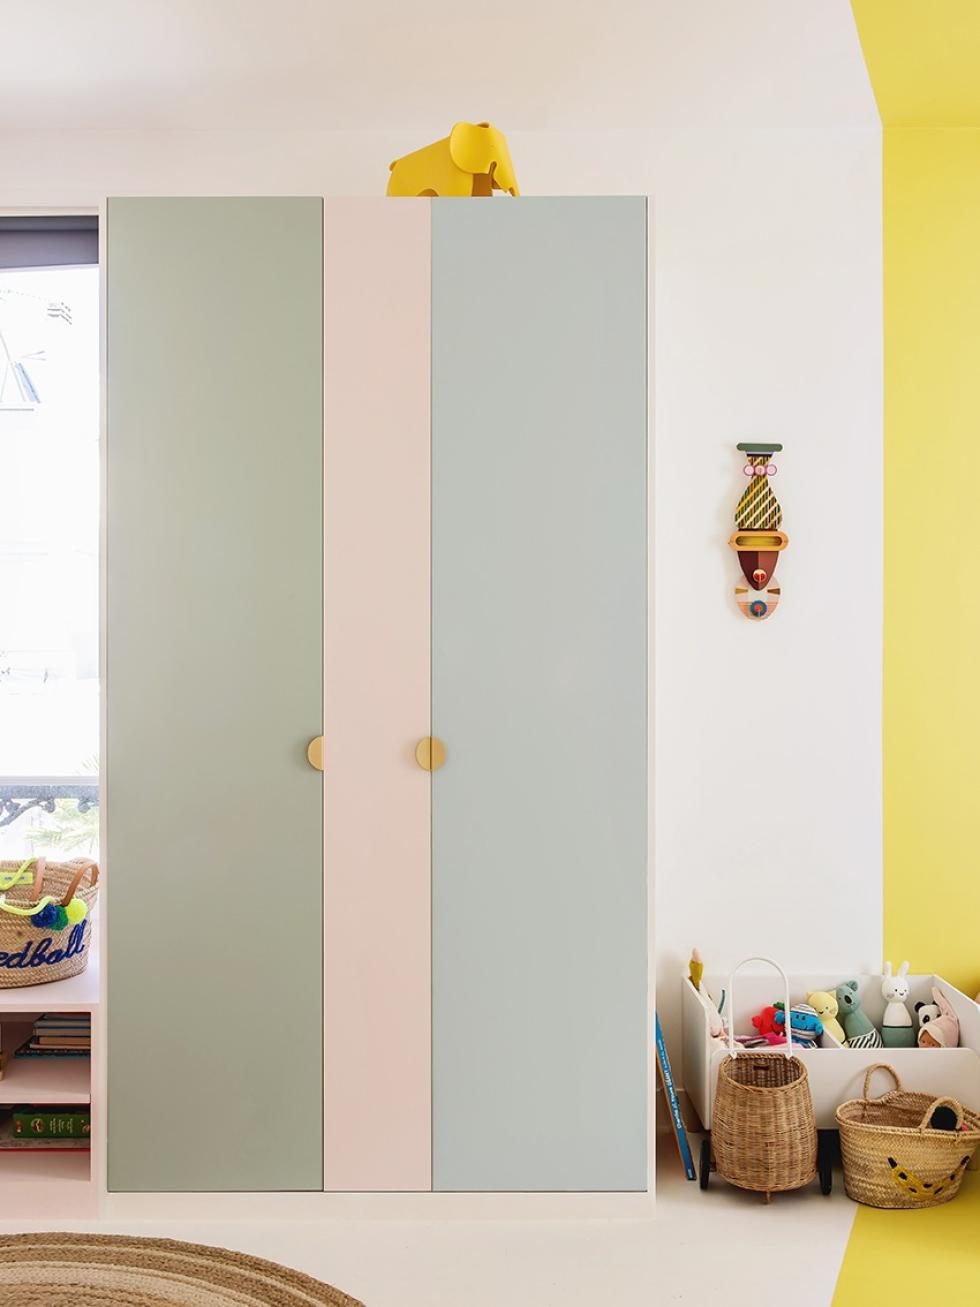 Projekt mit farbigen Wänden realisiert von Lucie Socrate ⓒ Hervé Goluza für Plum